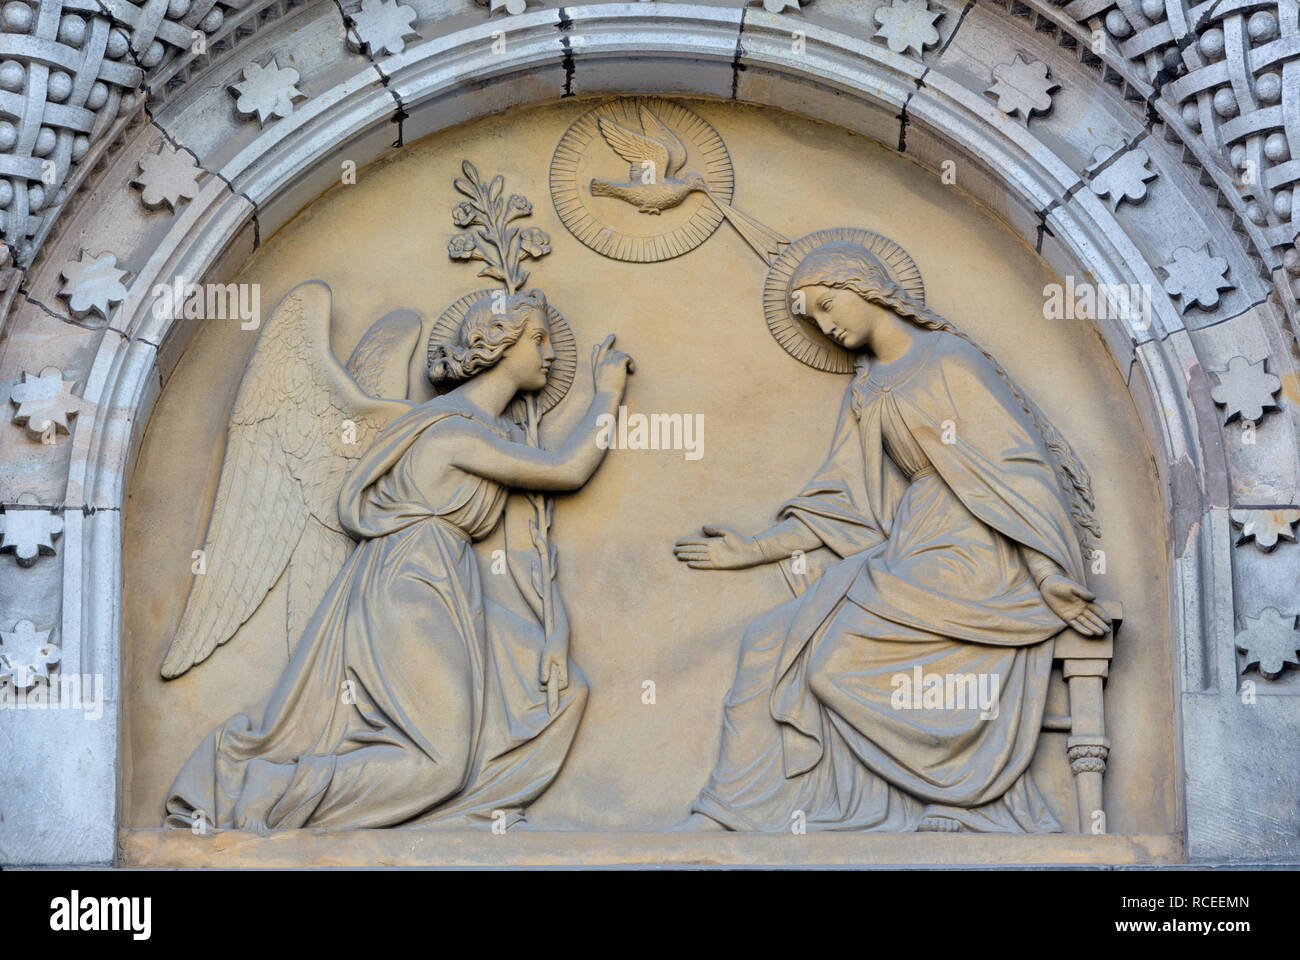 Praga, Repubblica Ceca - 17 ottobre 2018: il rilievo di annunciazione sul portale della chiesa kostel Svatého Cyrila Metodeje da Václav Levý Foto Stock